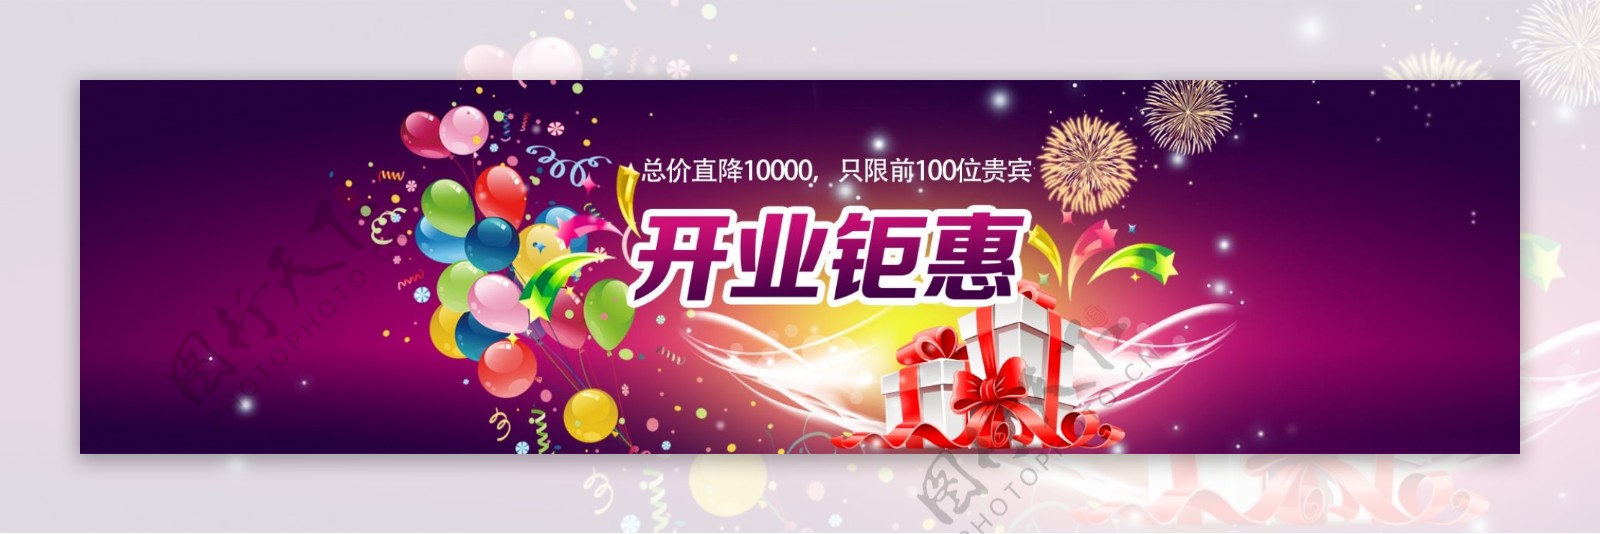 电商活动宣传banner新年开业特惠